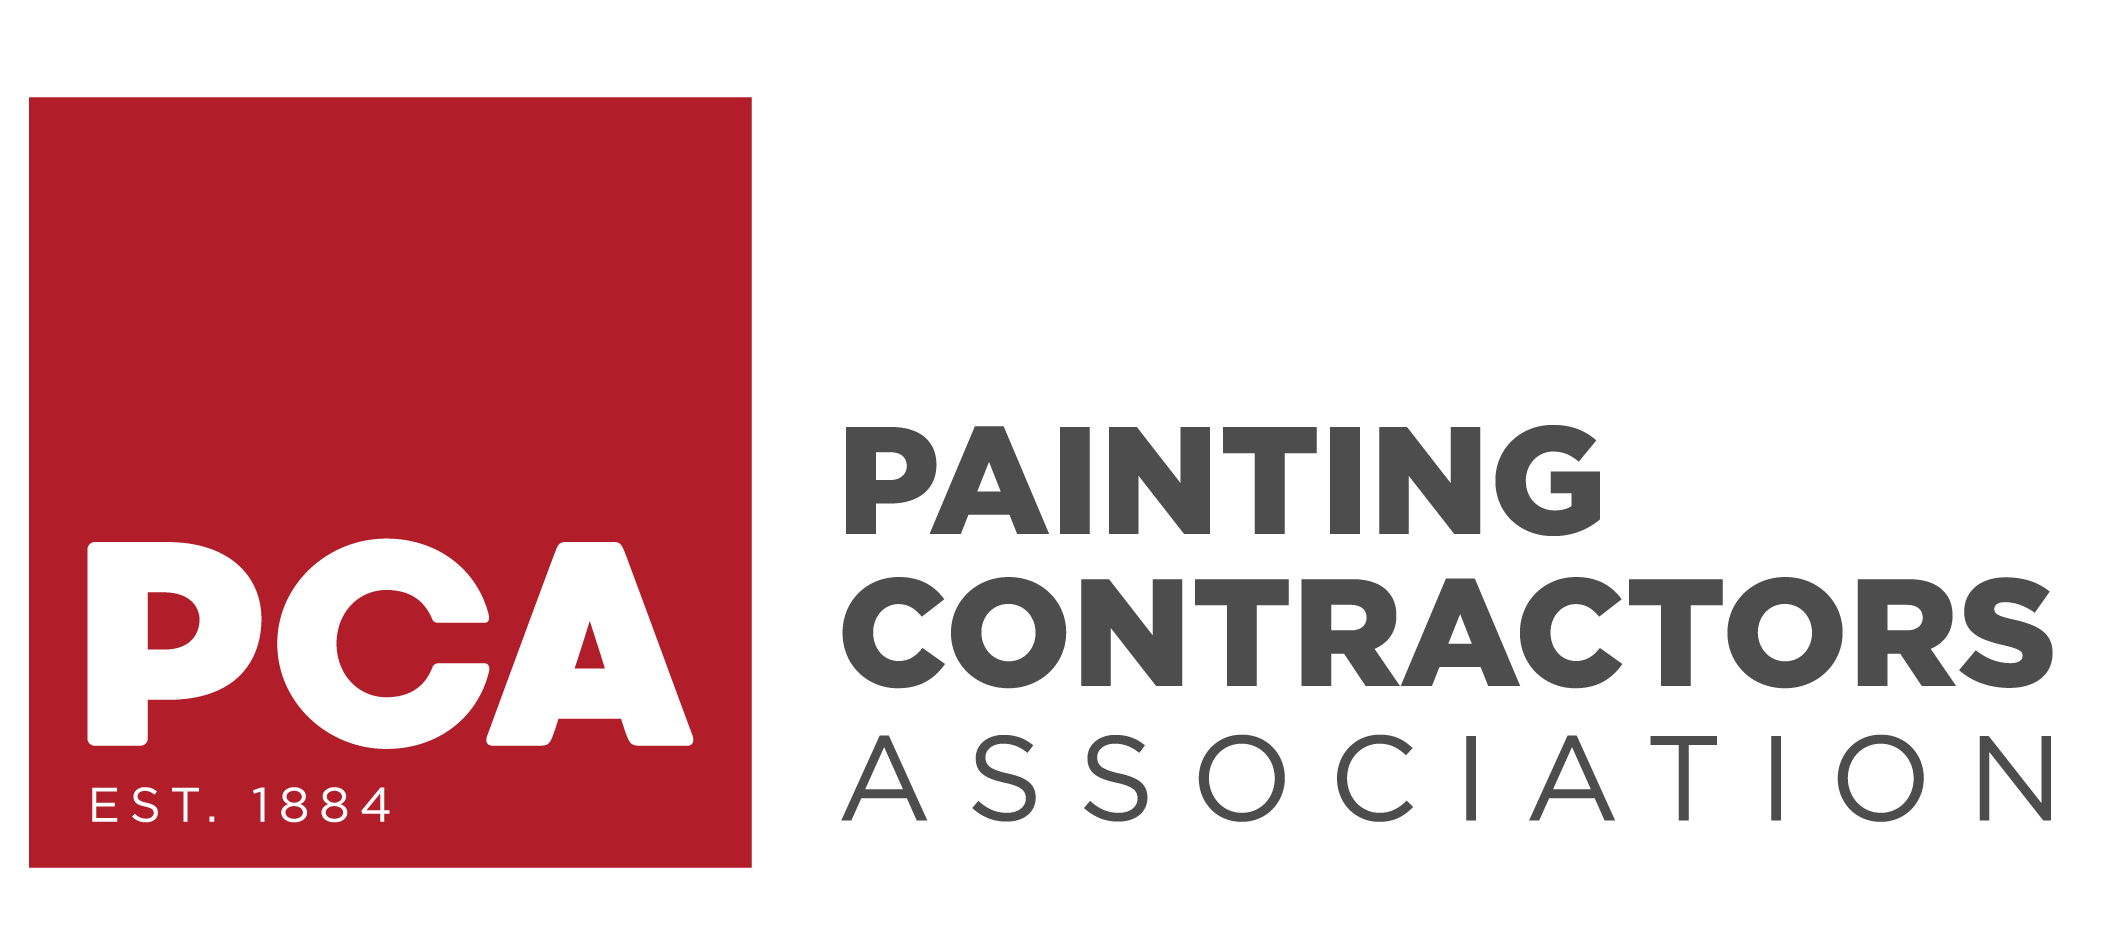 Painters Contractors Association